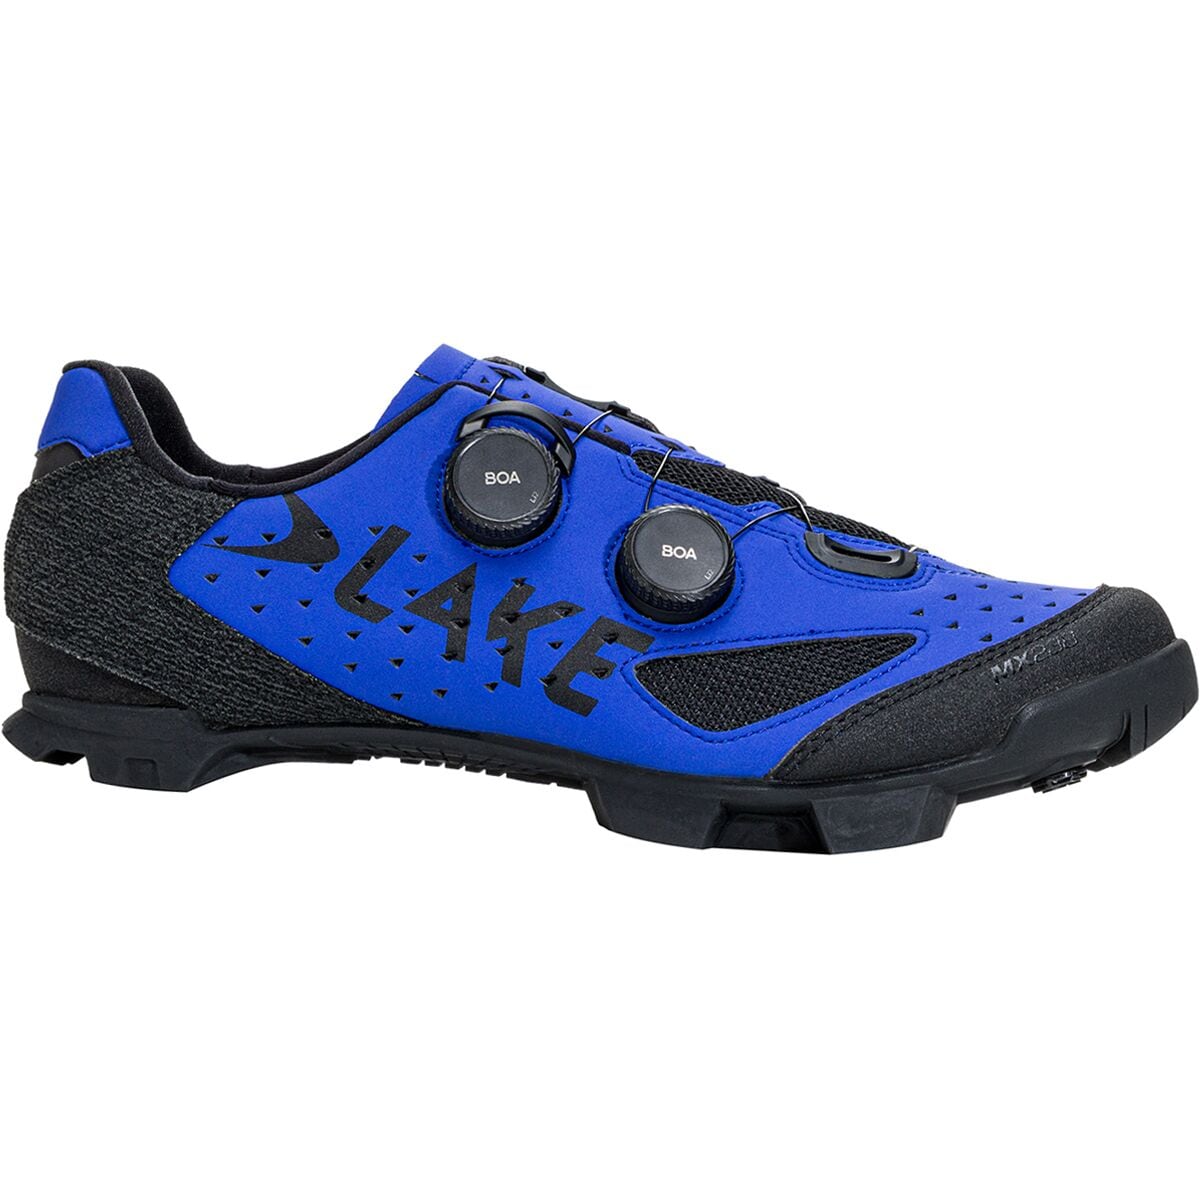 Lake MX238 Cycling Shoe - Men's Strong Blue/Black Microfiber, 50.0